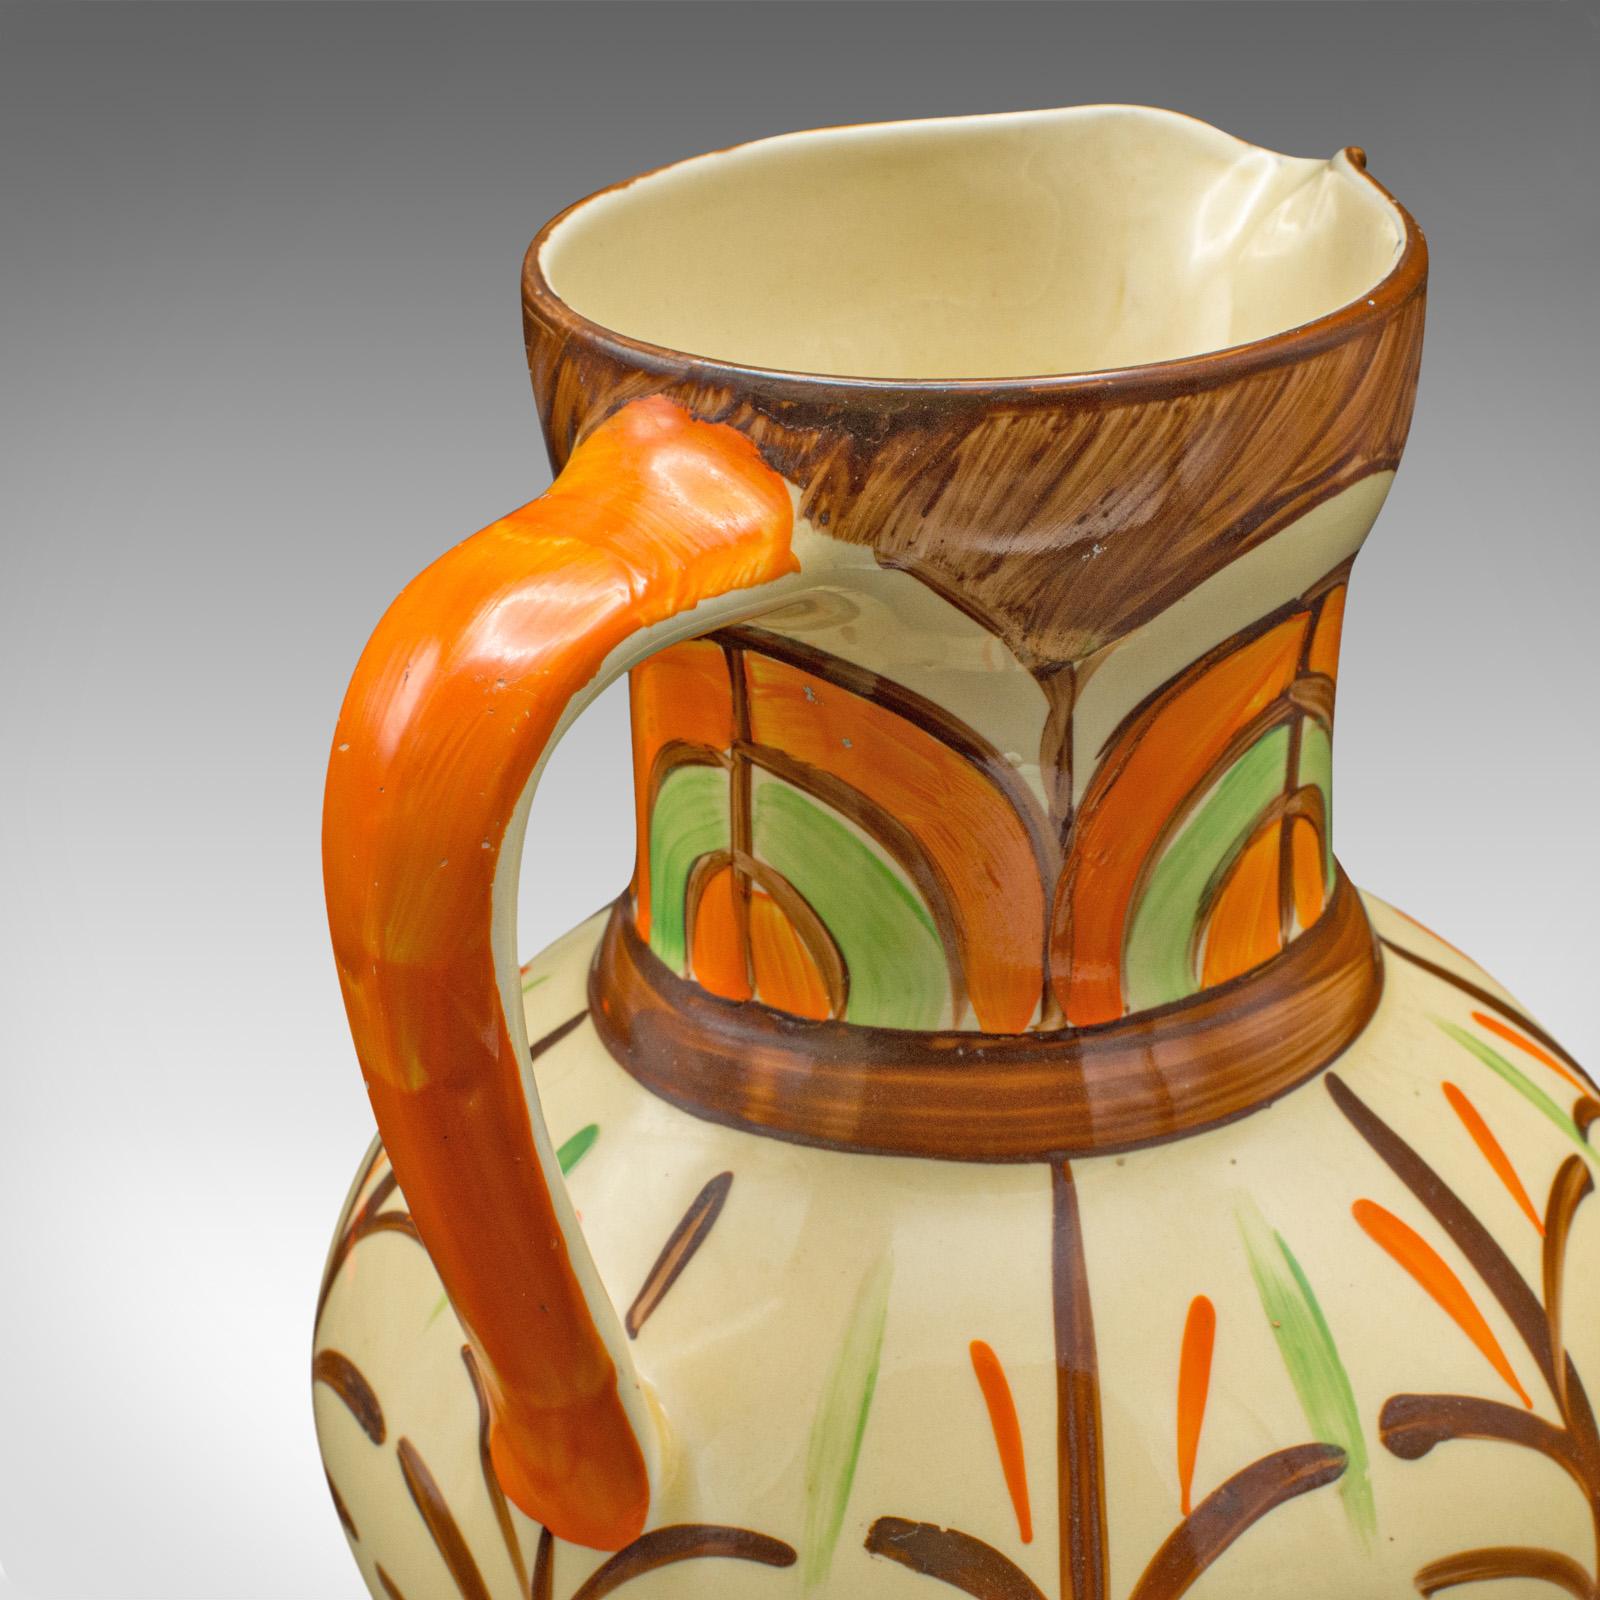 Vintage Decorative Pouring Jug, English, Hand Painted Ceramic, Pourer, Art Deco For Sale 6